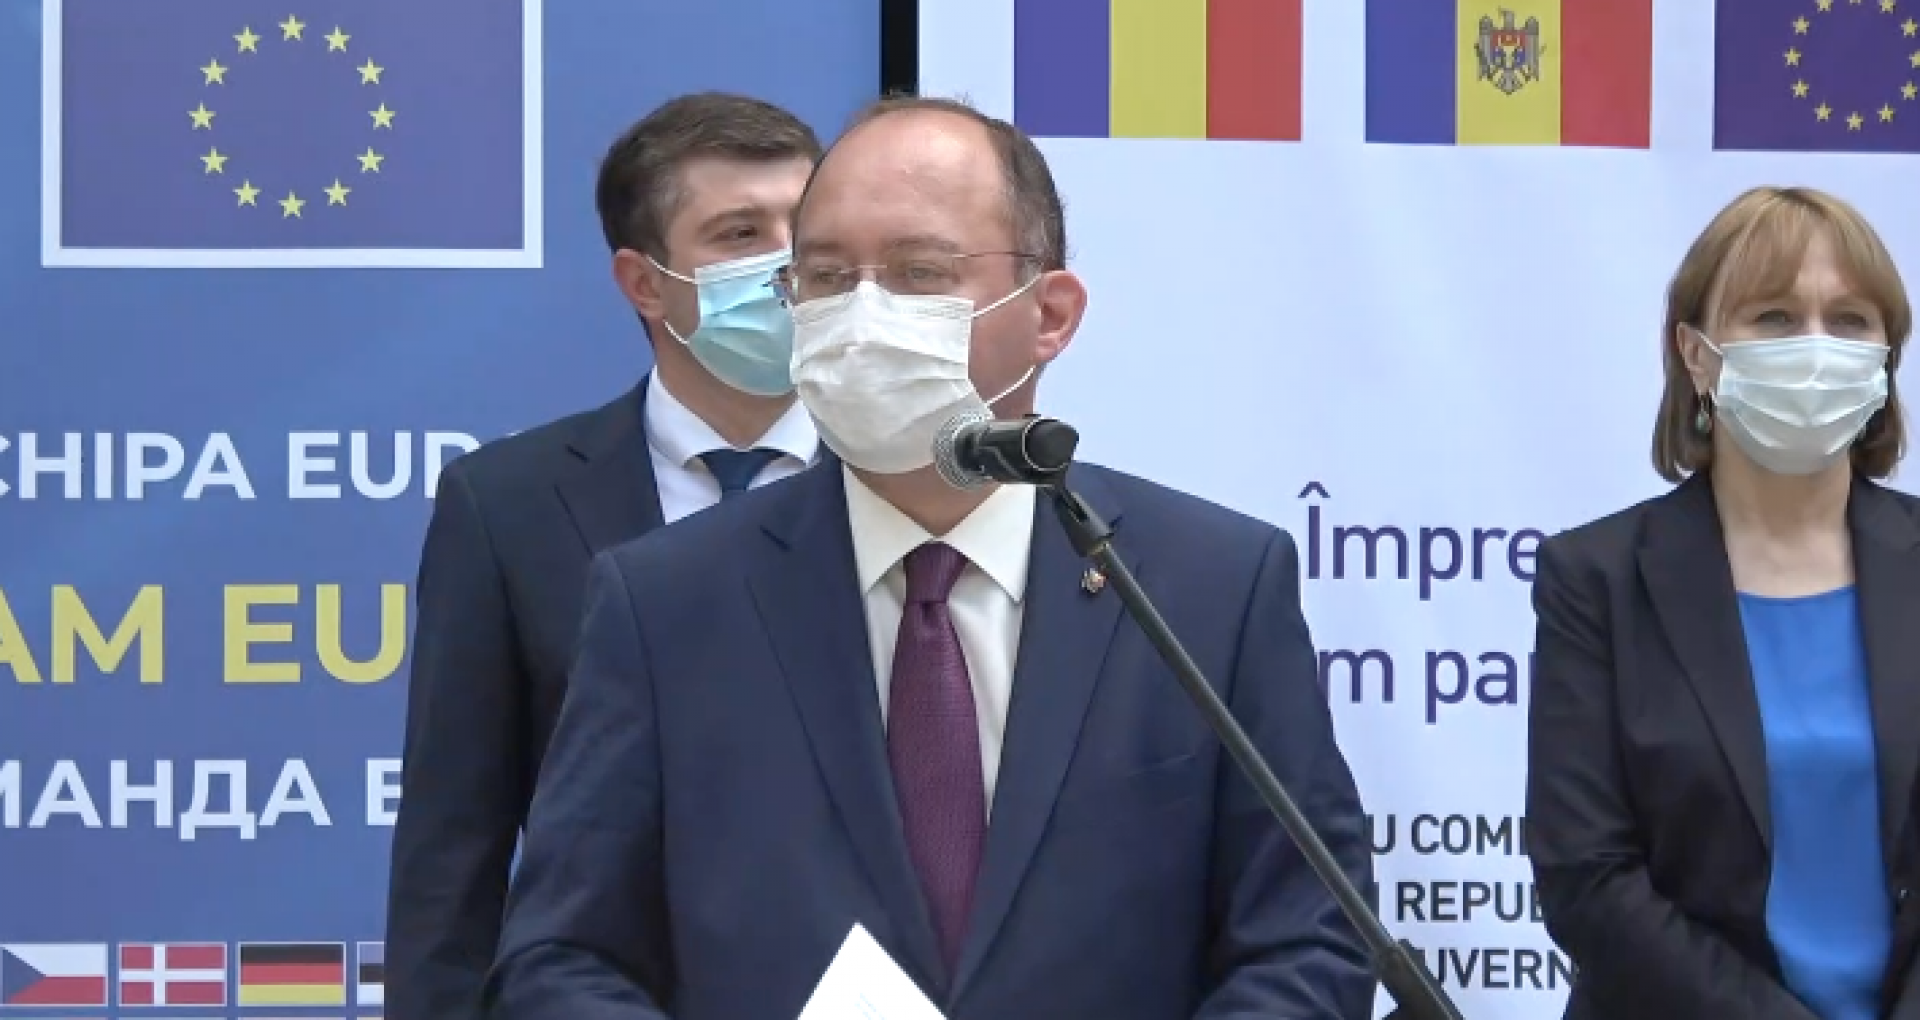 Romania Donates to Moldova 100,000 Doses of Pfizer Vaccine